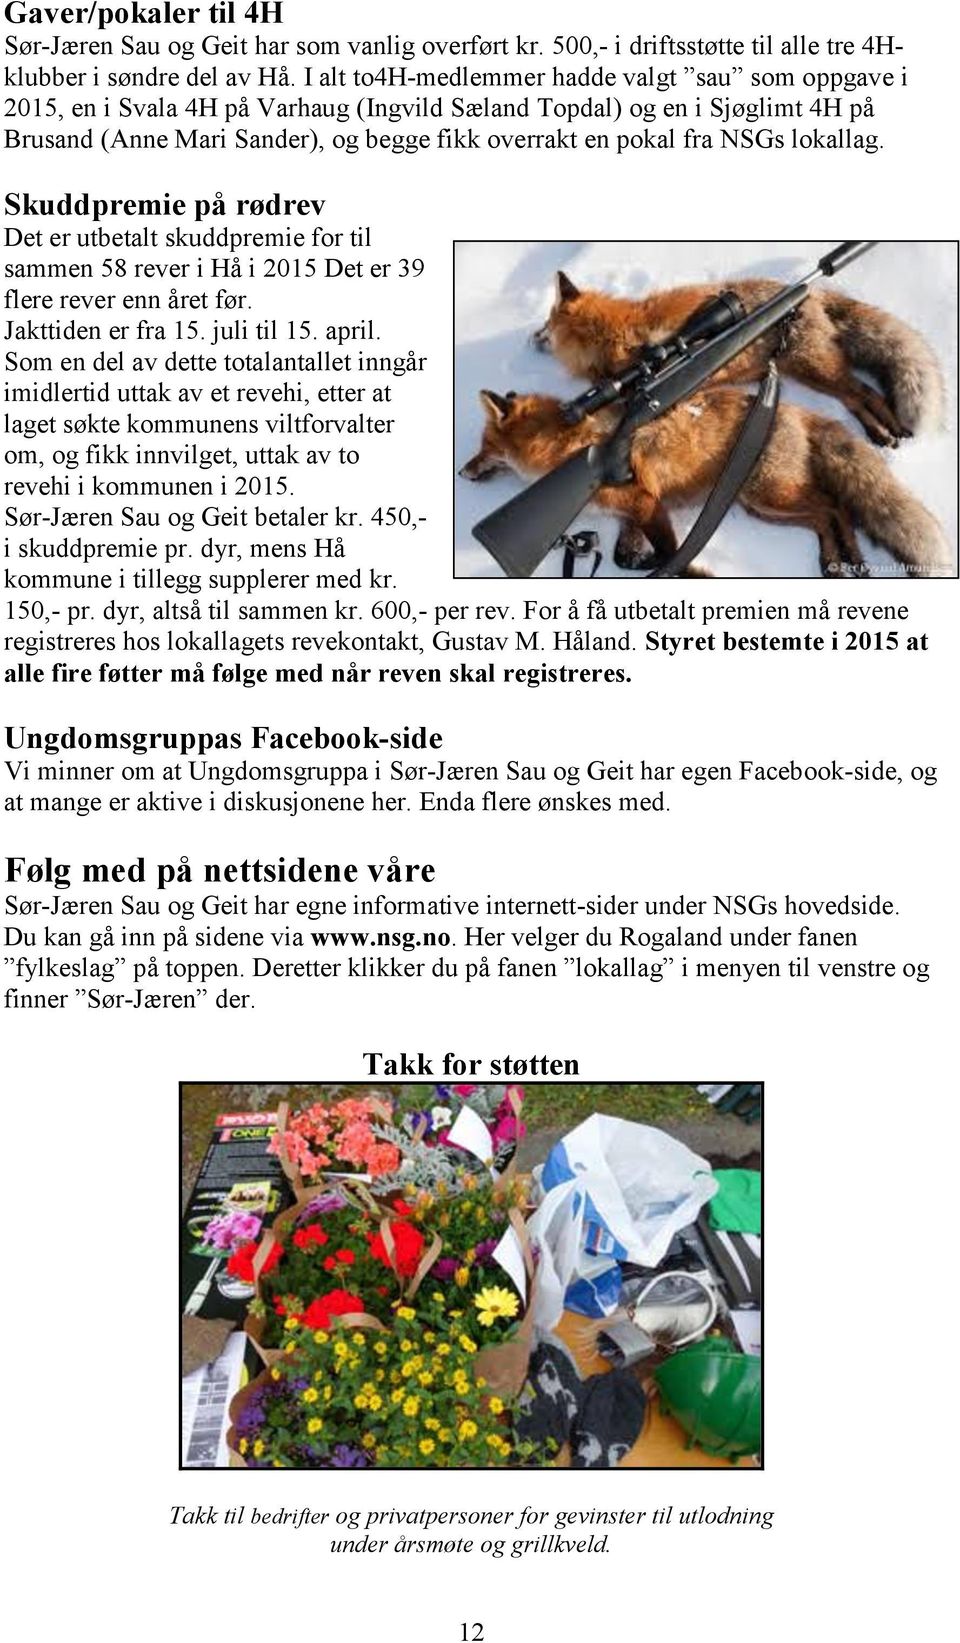 lokallag. Skuddpremie på rødrev Det er utbetalt skuddpremie for til sammen 58 rever i Hå i 2015 Det er 39 flere rever enn året før. Jakttiden er fra 15. juli til 15. april.